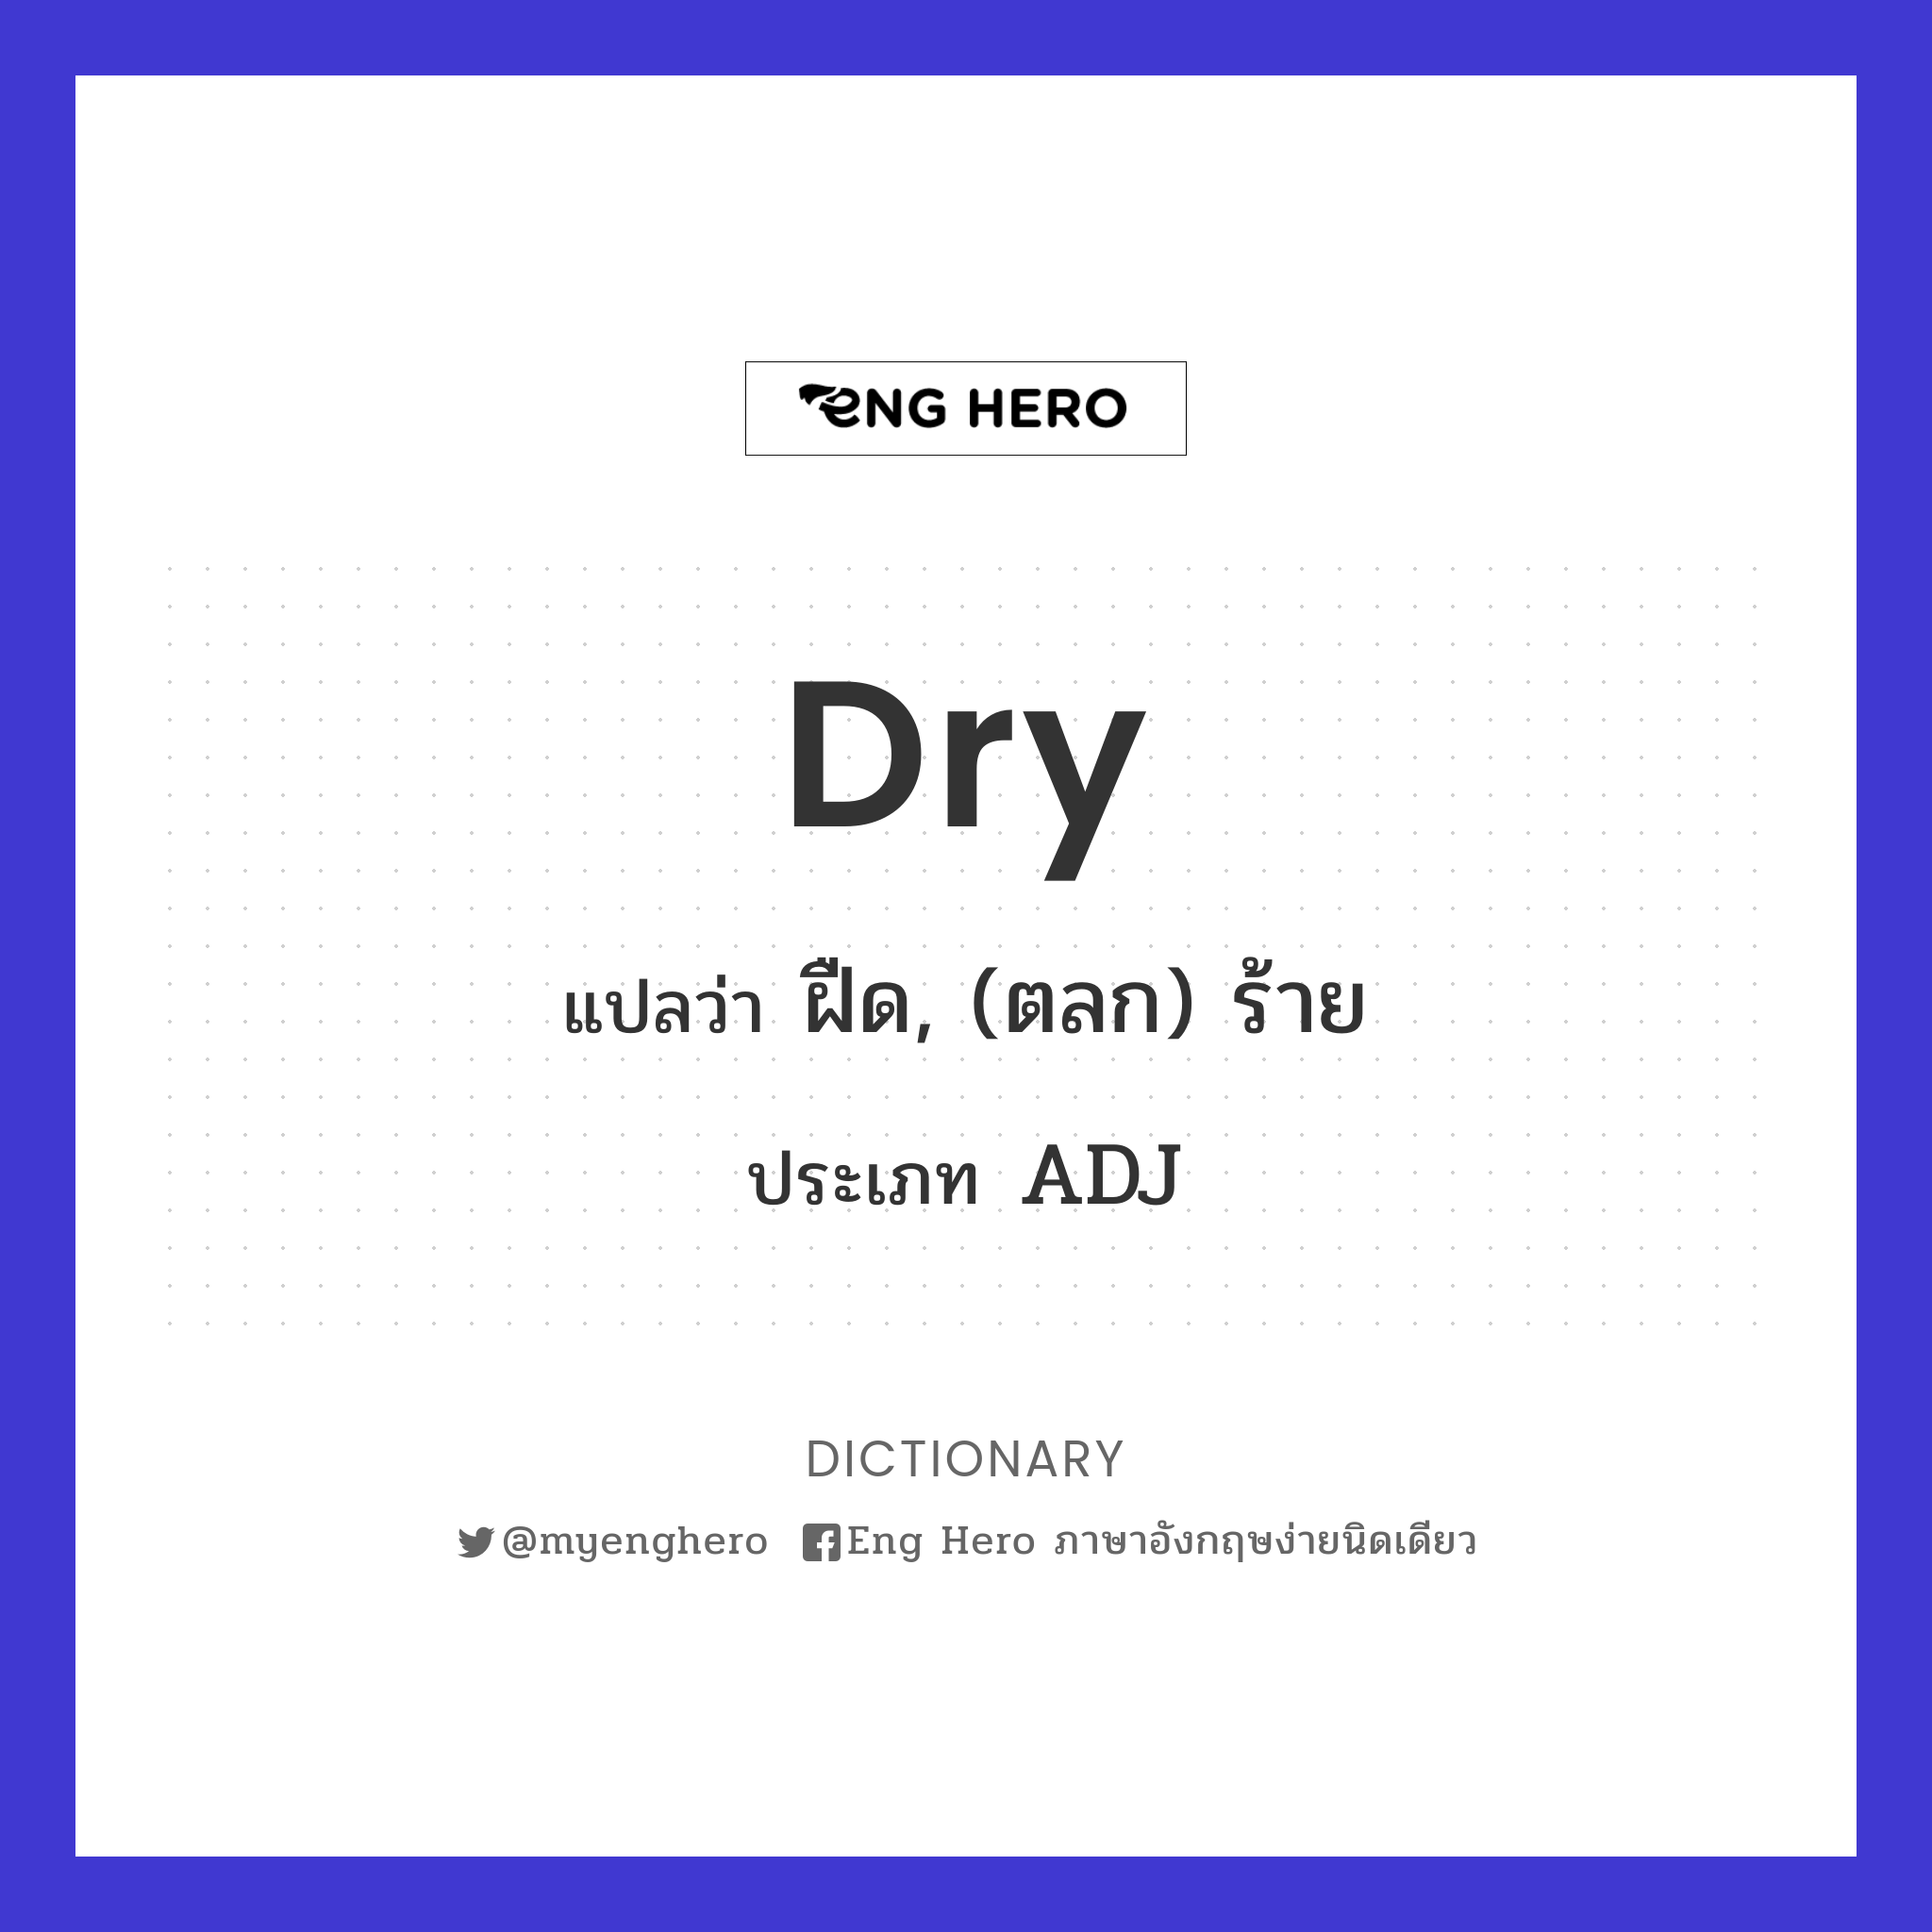 dry